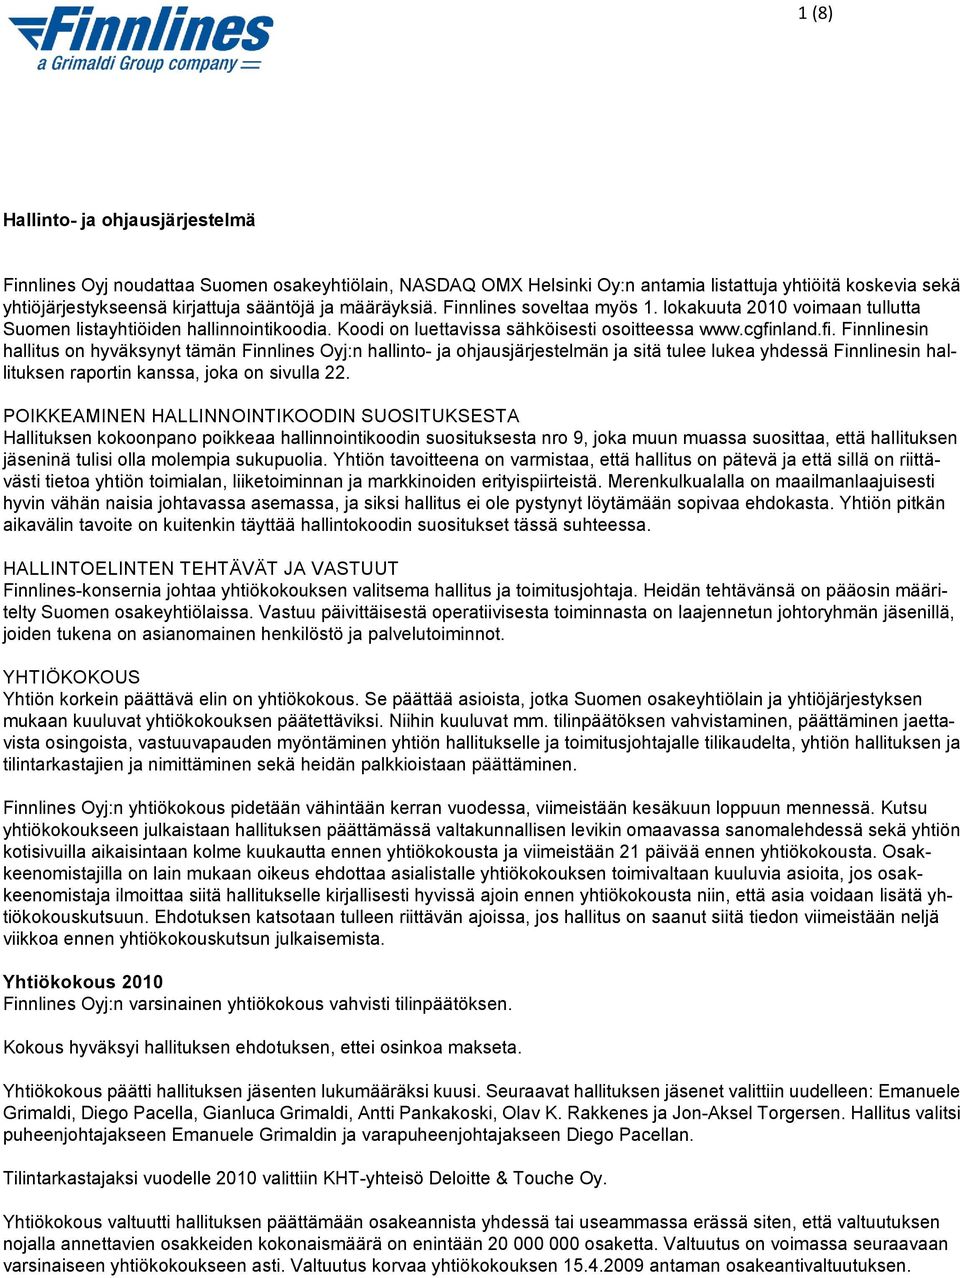 land.fi. Finnlinesin hallitus on hyväksynyt tämän Finnlines Oyj:n hallinto- ja ohjausjärjestelmän ja sitä tulee lukea yhdessä Finnlinesin hallituksen raportin kanssa, joka on sivulla 22.